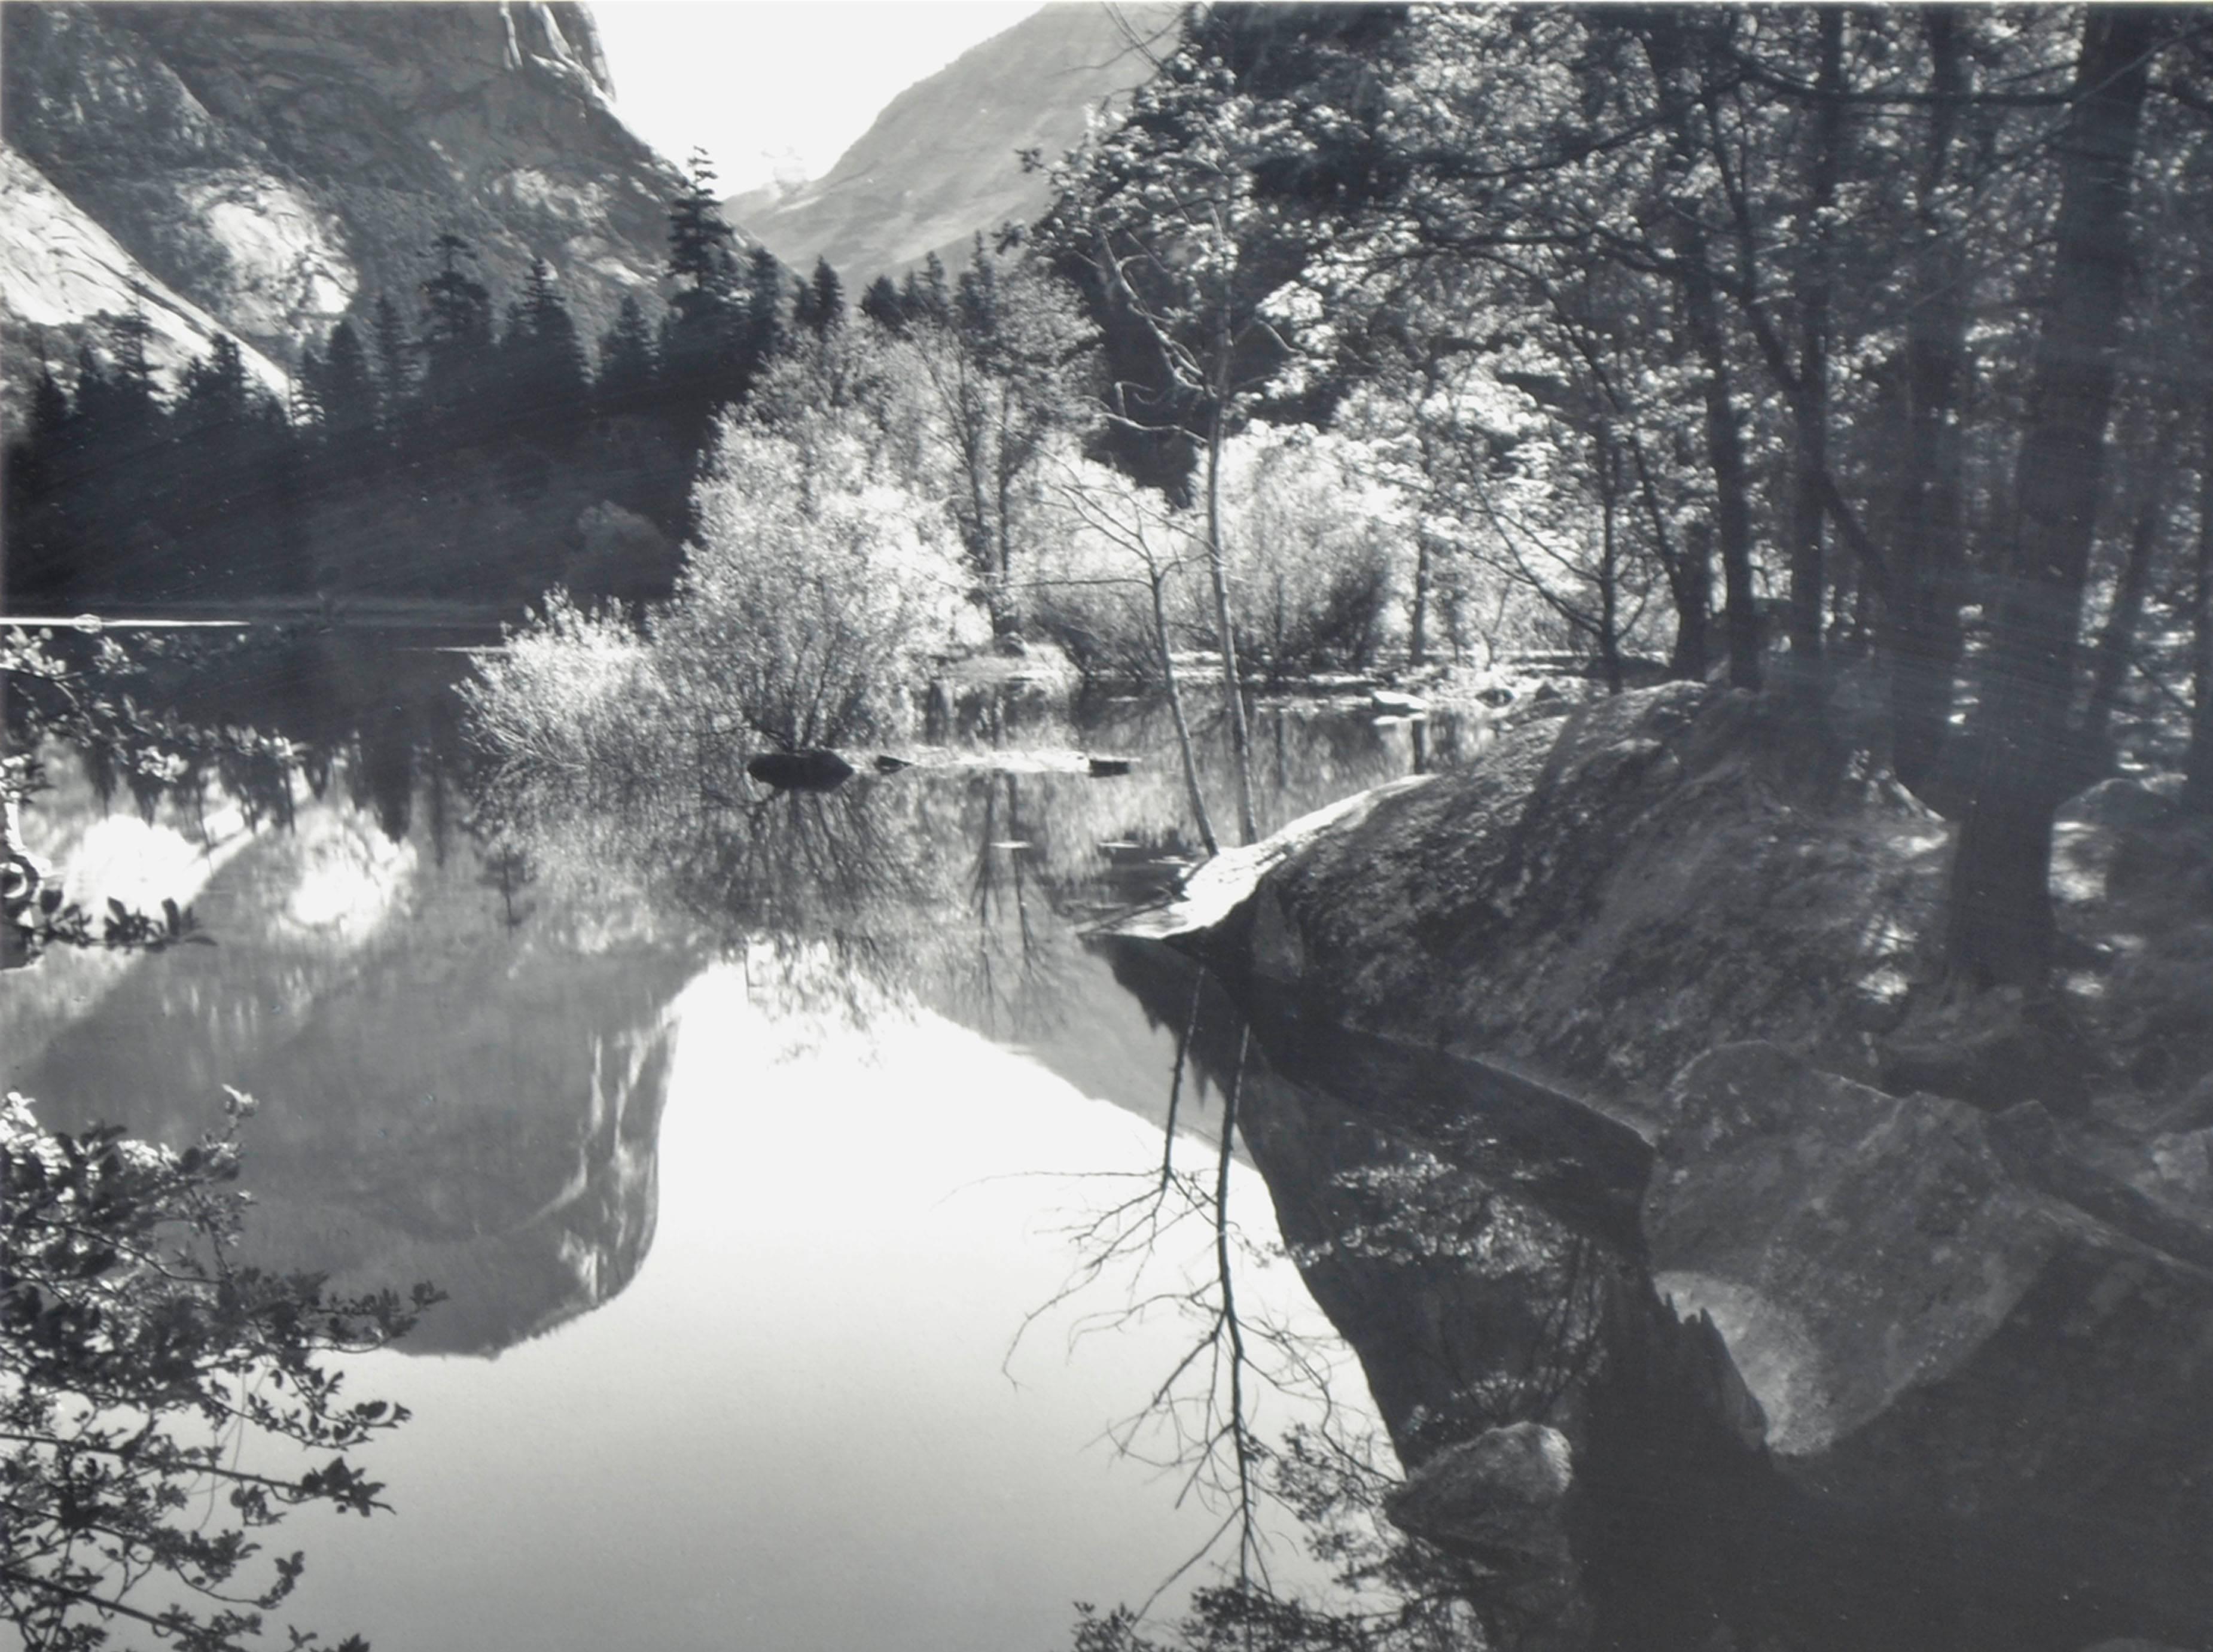 Reflektionen des Sierra Mountain Reflections – Schwarz-Weiß-Landschaftsfotografie (Realismus), Photograph, von Robert Werling